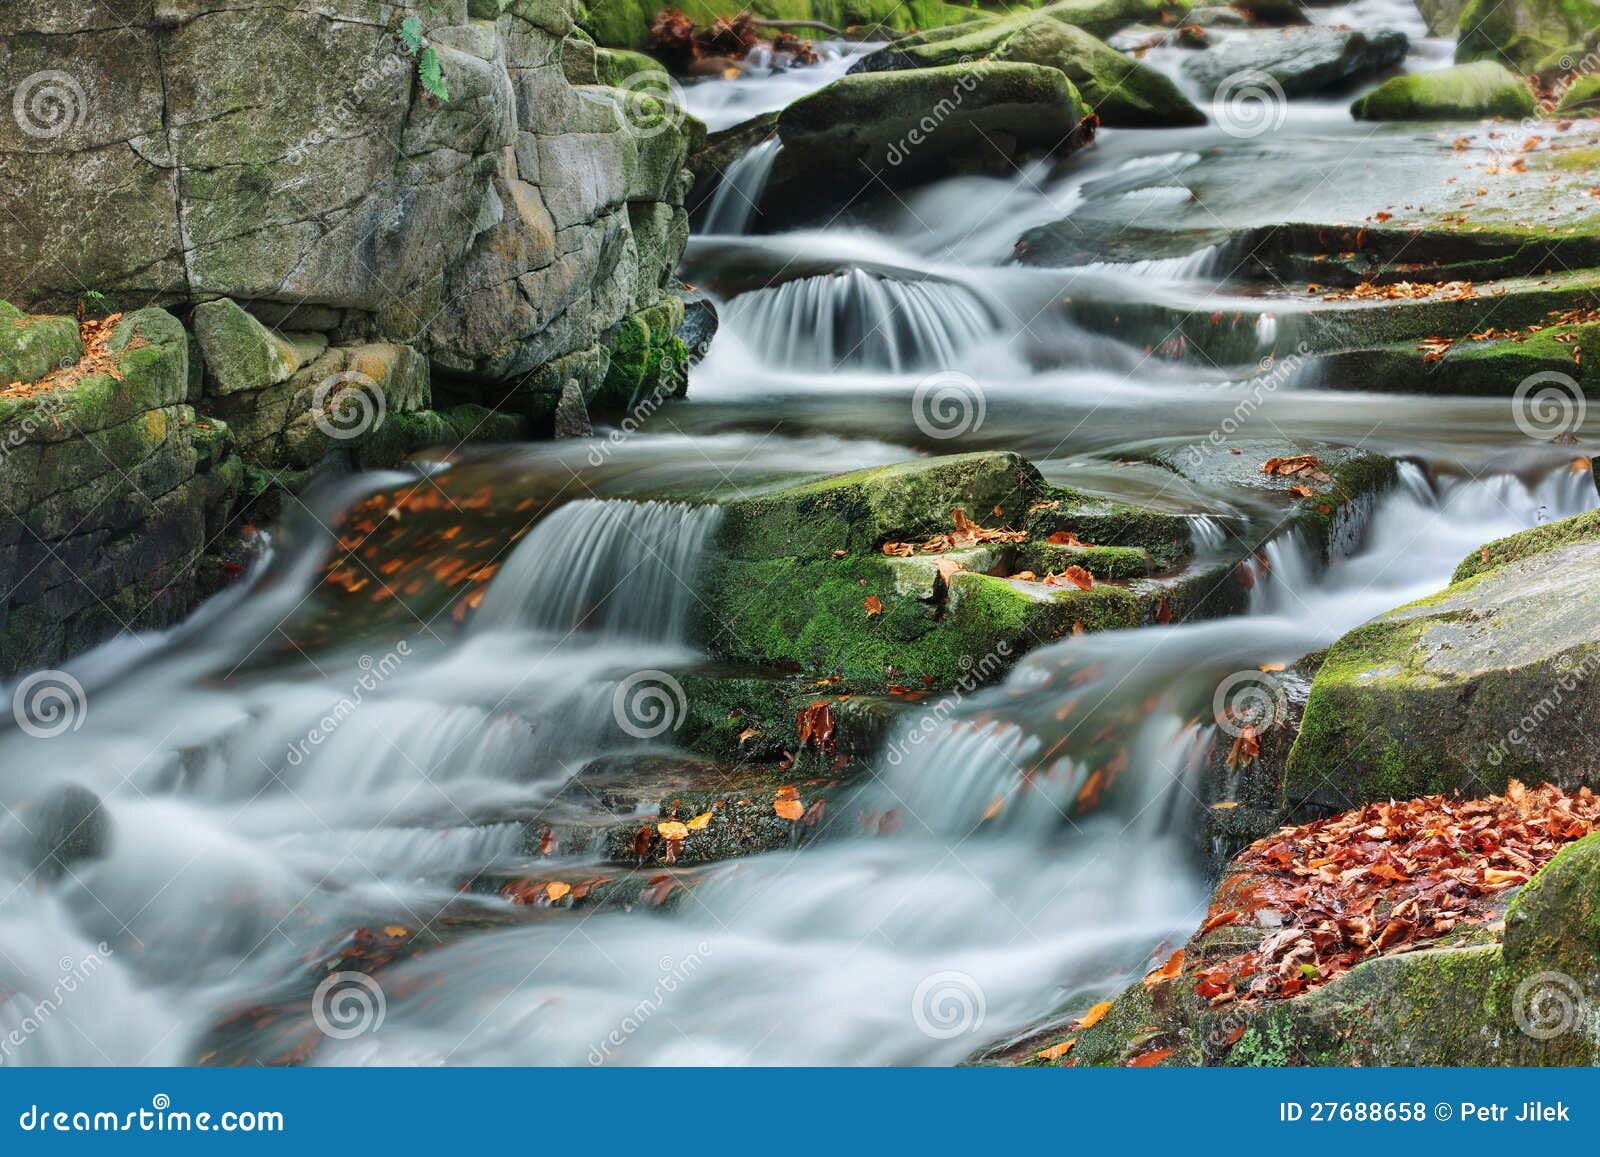 mountain stream in autumn